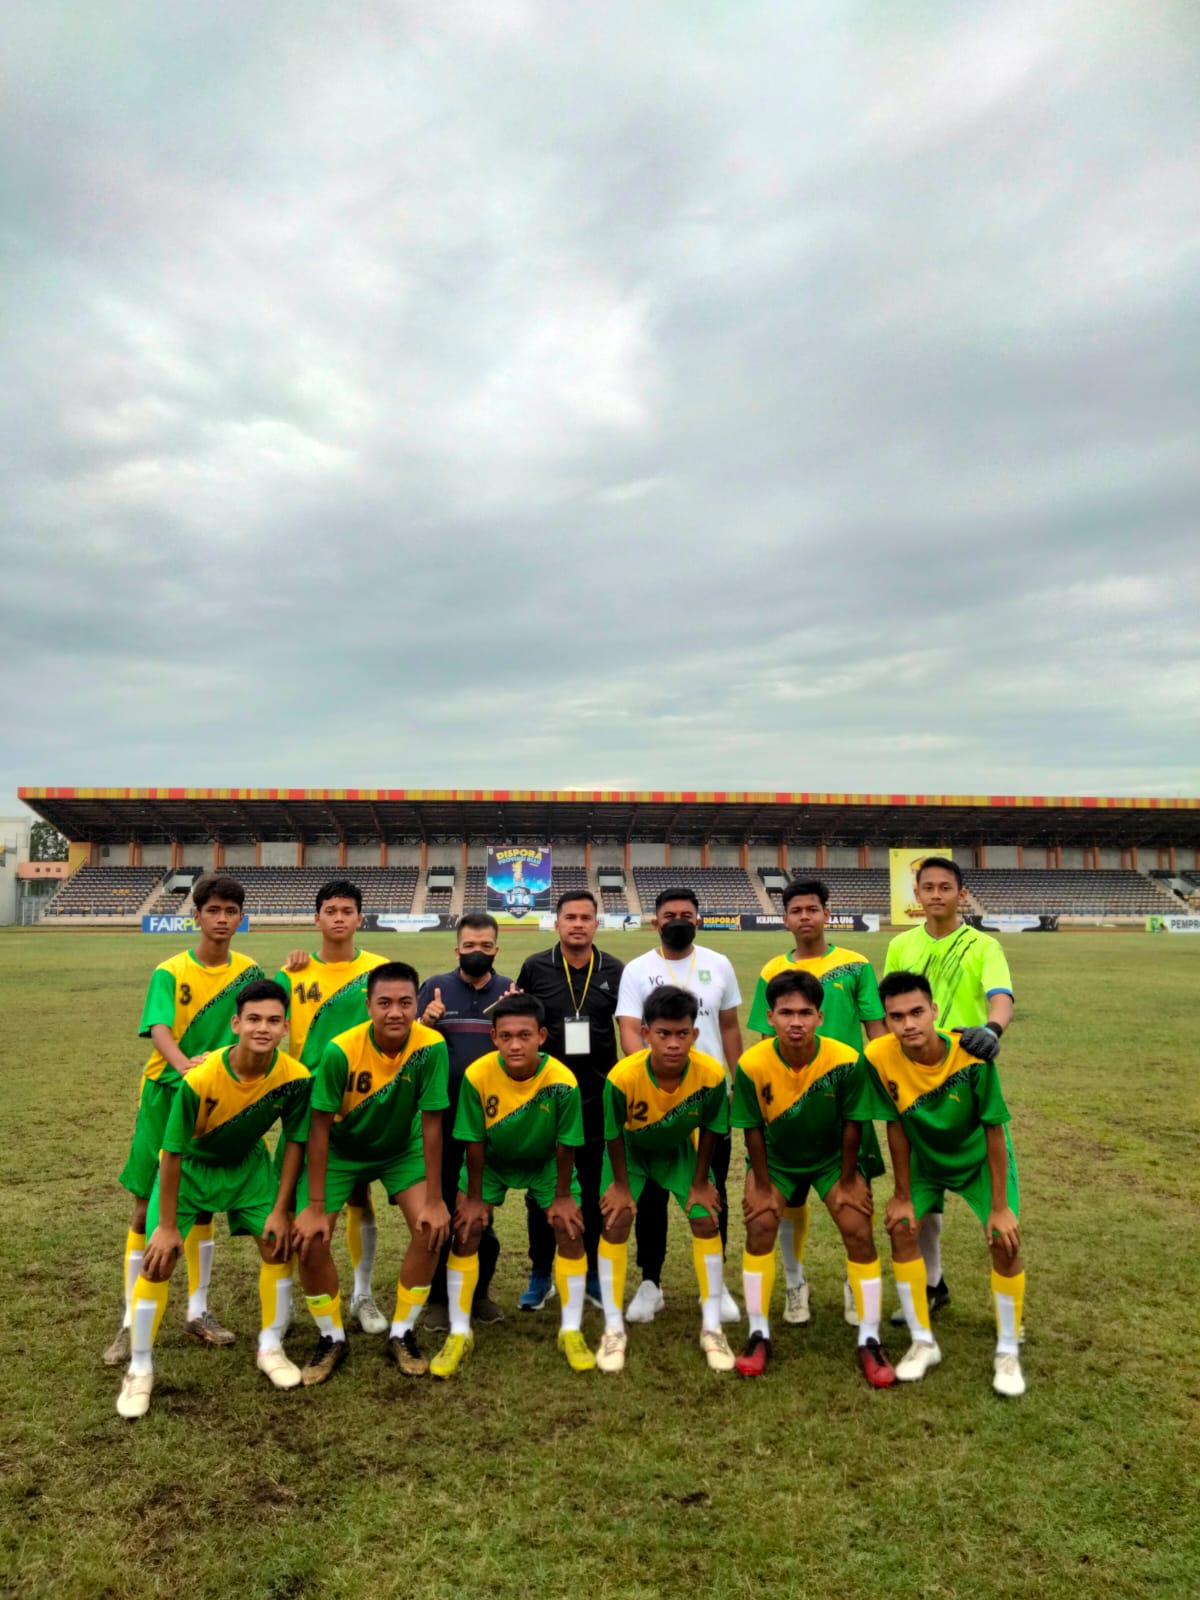 Kadispora Nonton Langsung, Bengkalis Raih Juara 3 Kejurda Sepakbola U-16 Riau